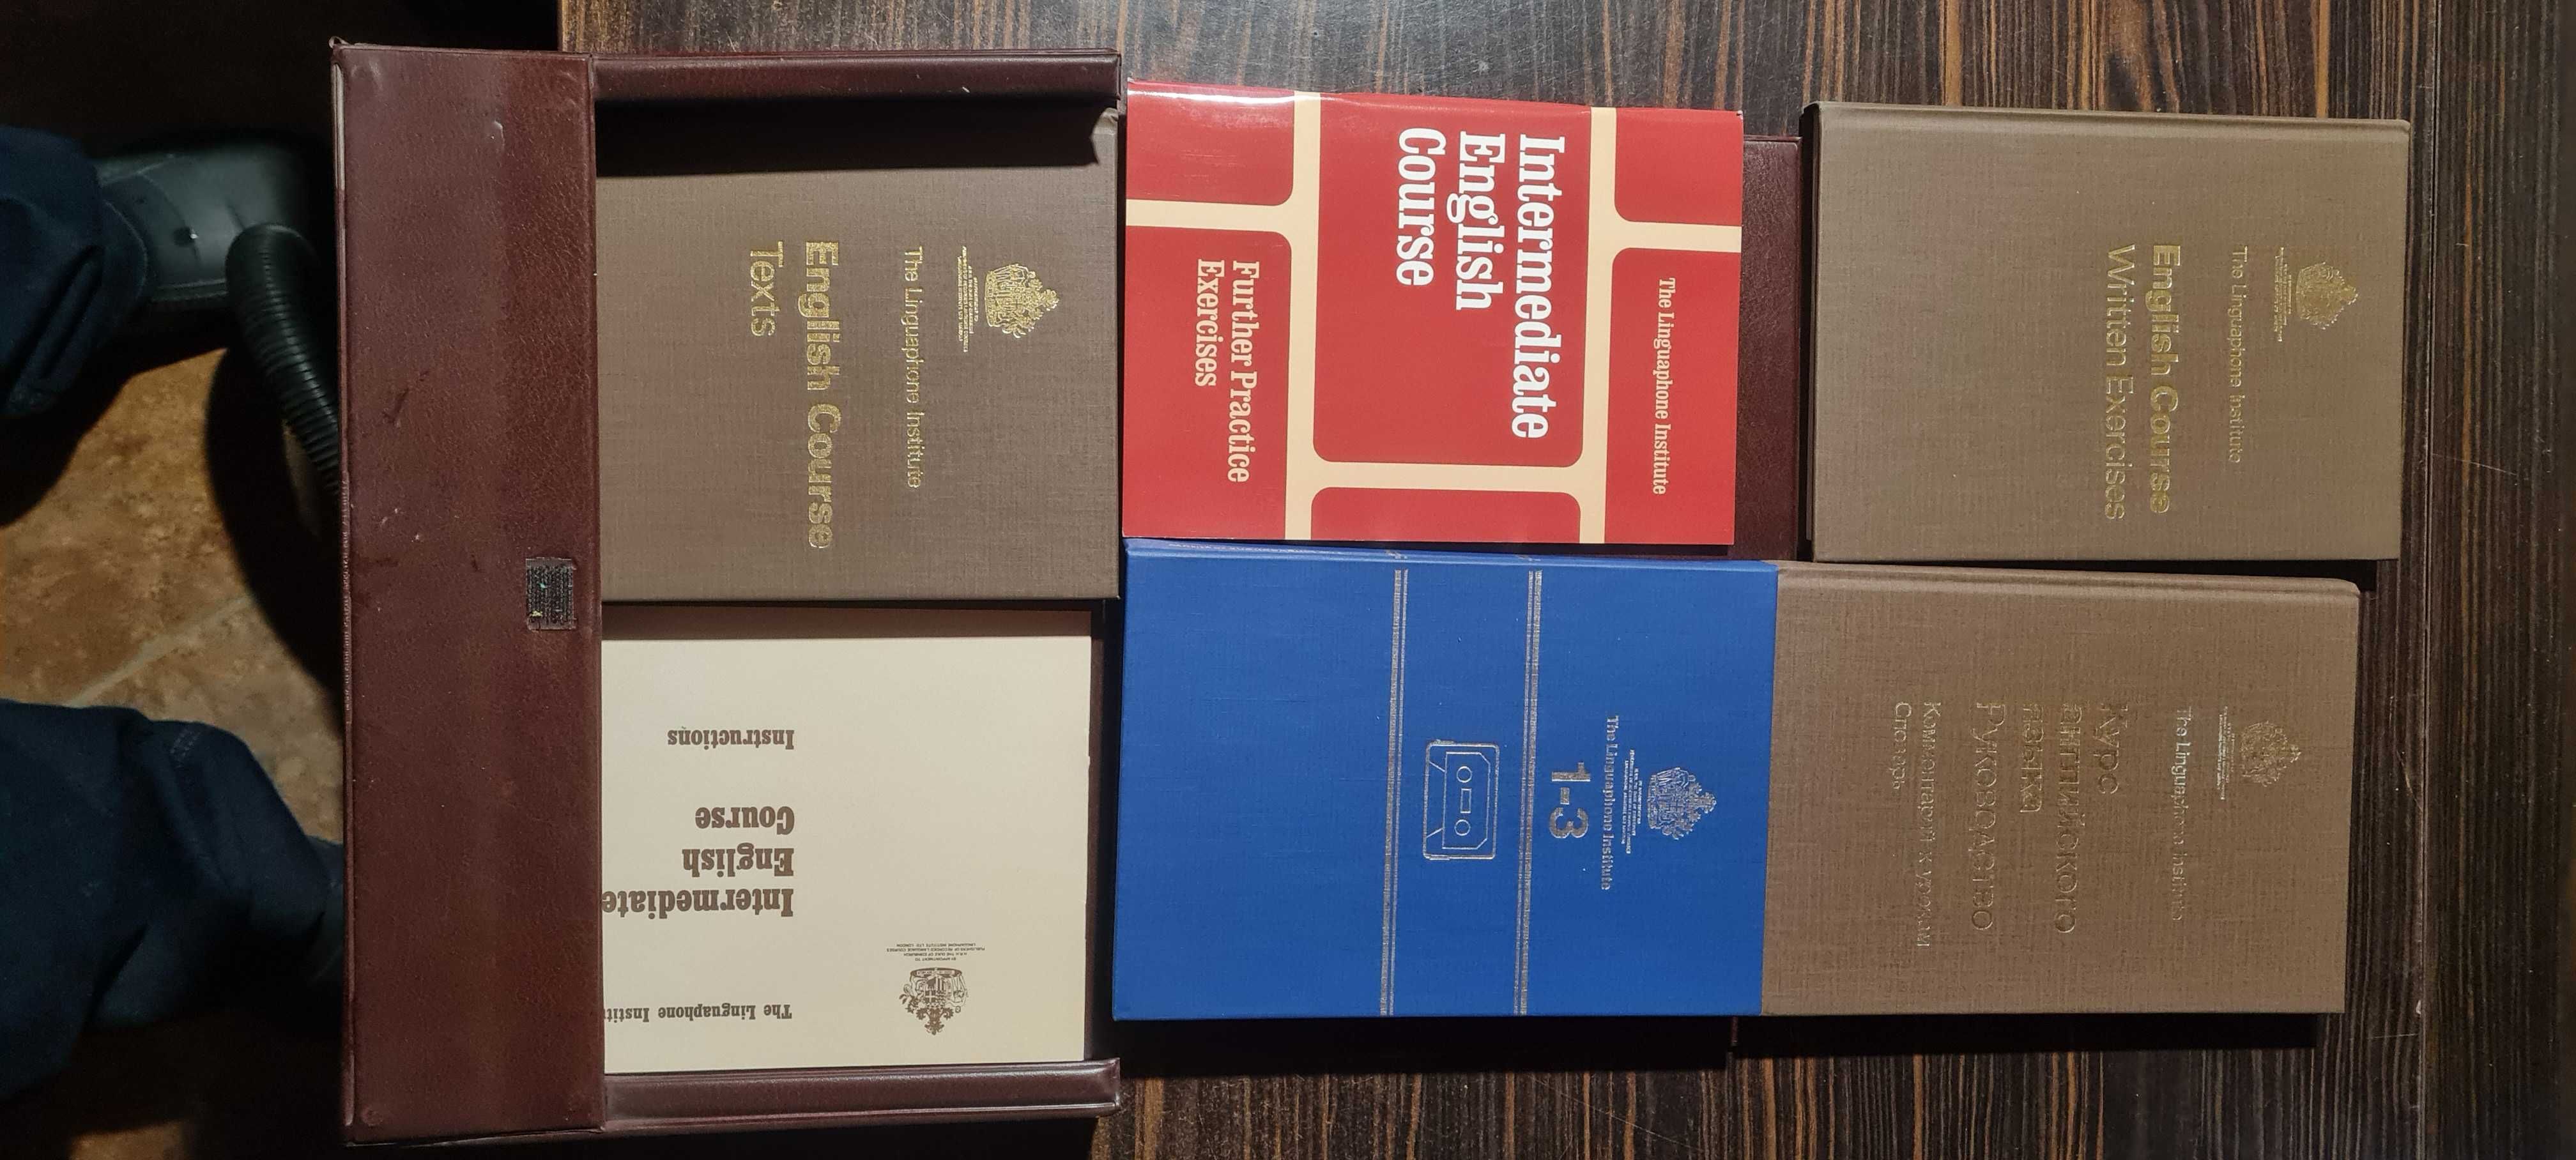 Учебници за английски с касетки, от времето на соца.